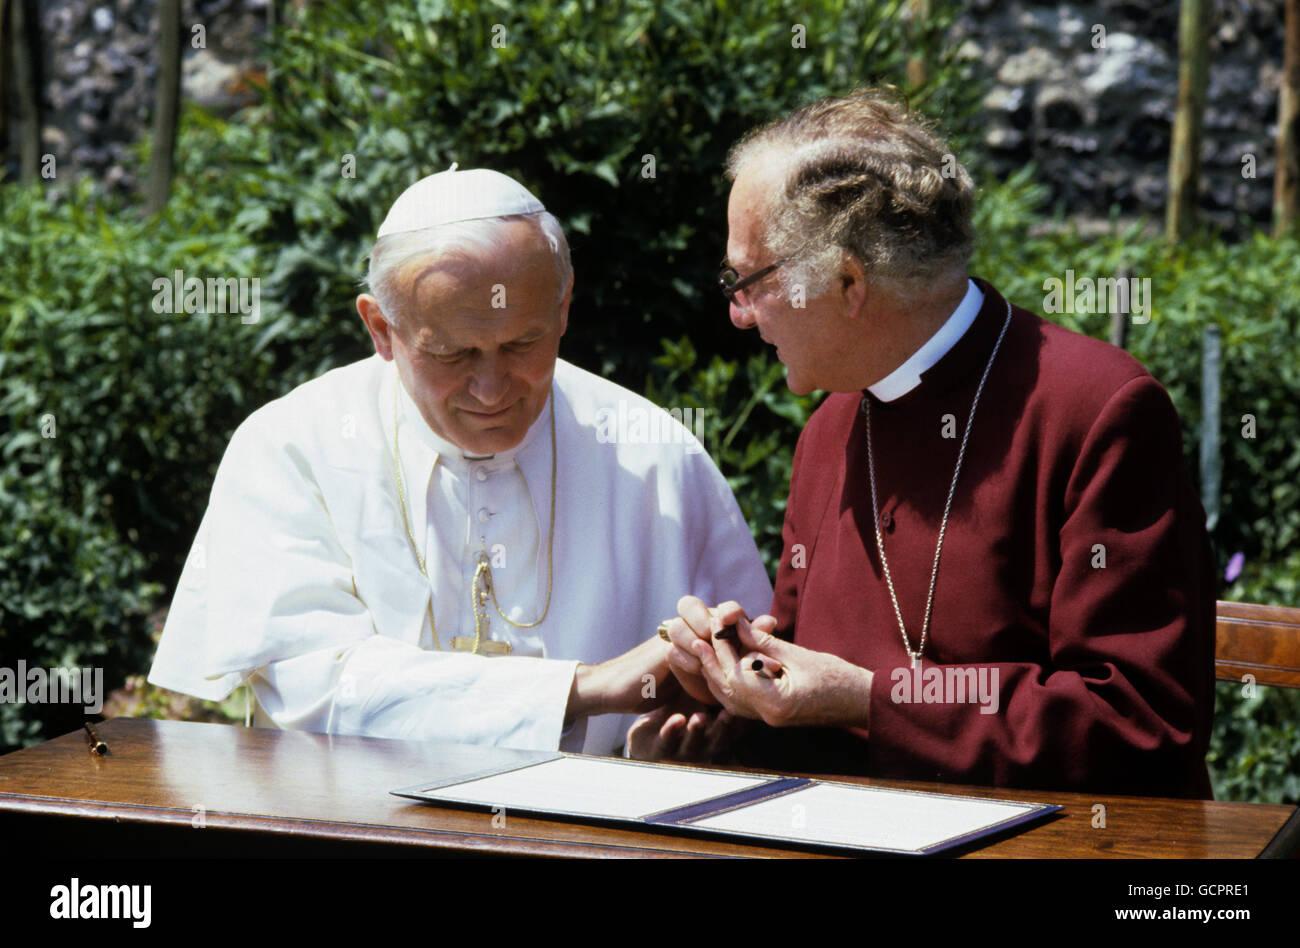 Le pape Jean-Paul II (à gauche) reconnaît l'archevêque de Canterbury, le Dr Robert Runcie (à droite), dans le cadre de la Deanery de la cathédrale, de signer une déclaration visant à créer une nouvelle Commission internationale anglicane-catholique pour examiner les différences doctrinales qui séparent les deux églises. Banque D'Images